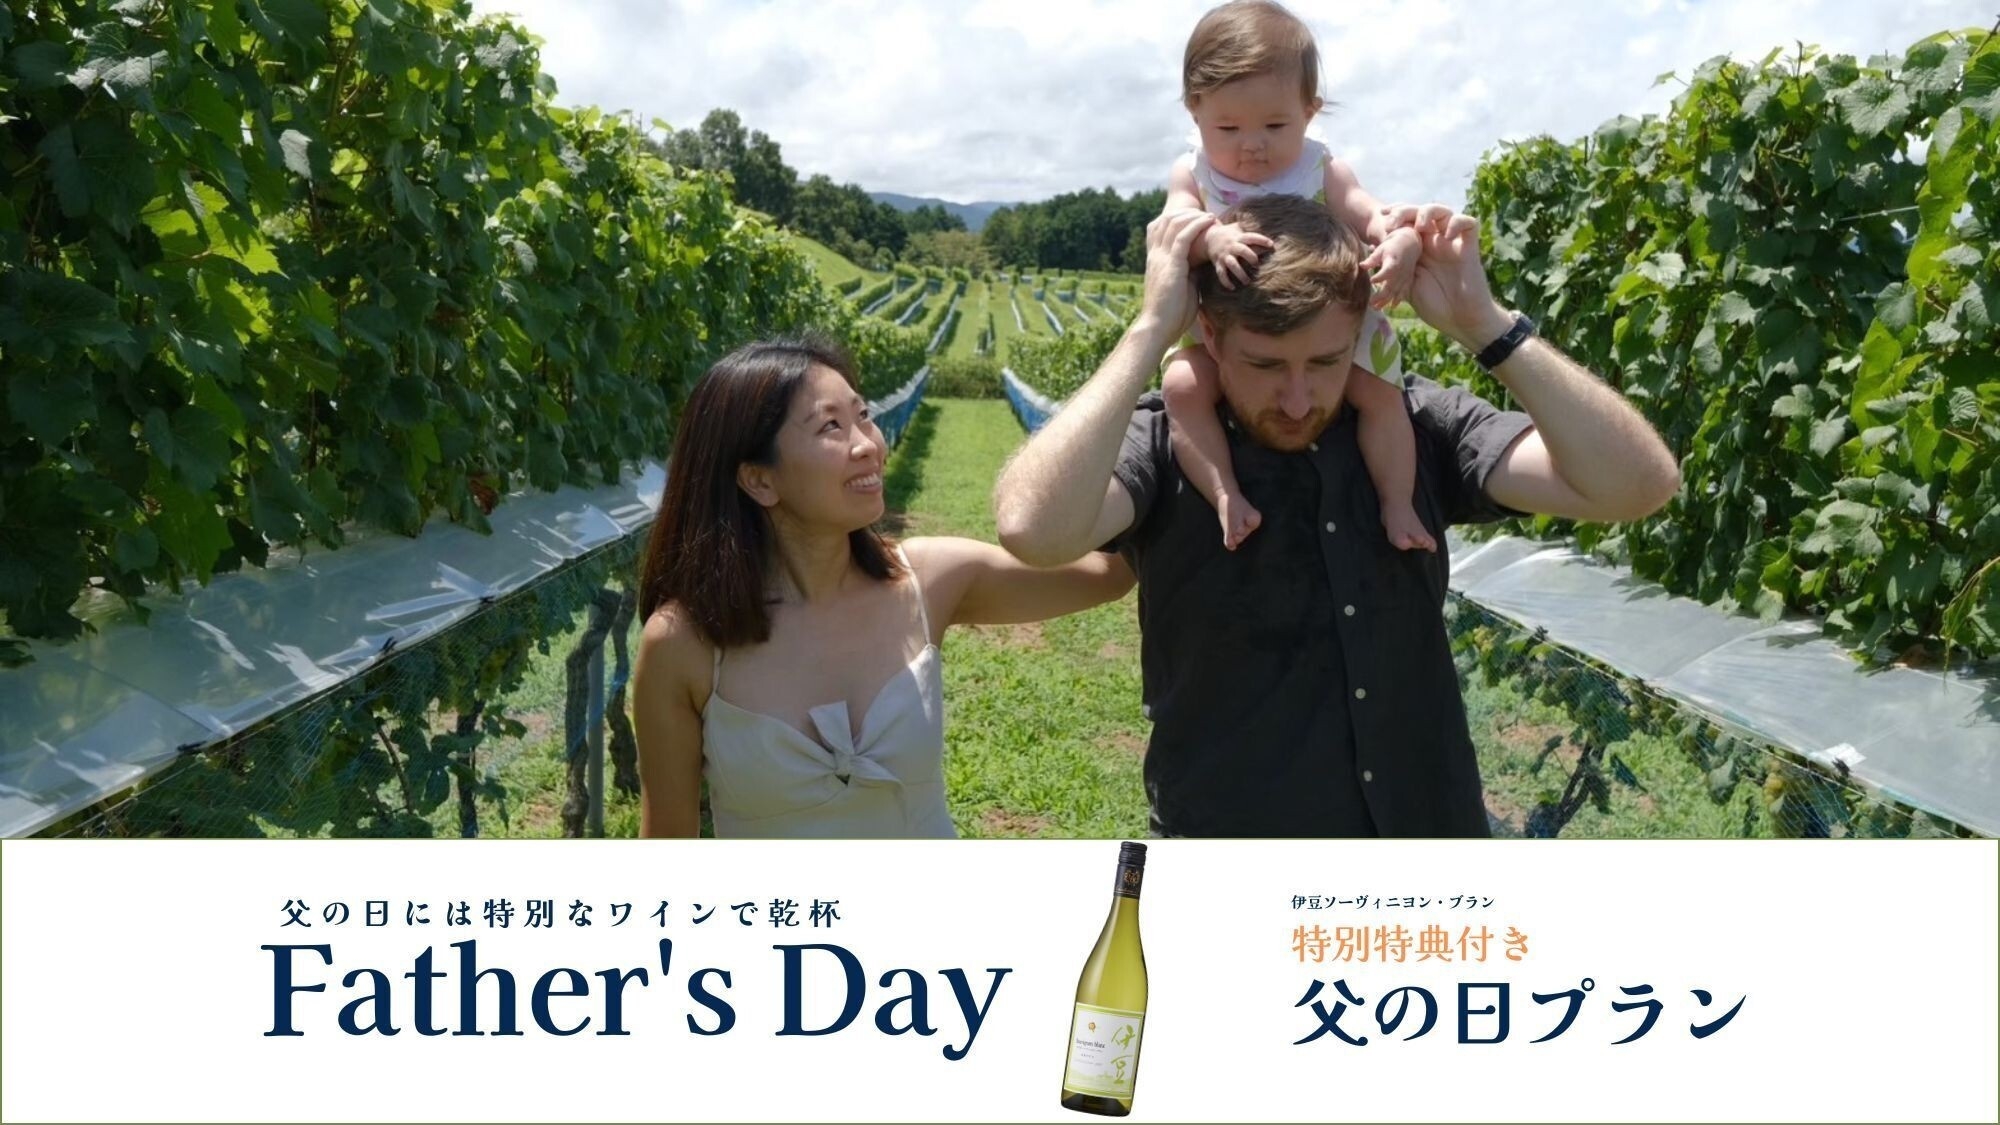 【期間限定】父の日に特別なワインで乾杯【伊豆ソーヴィニヨン・ブラン付】